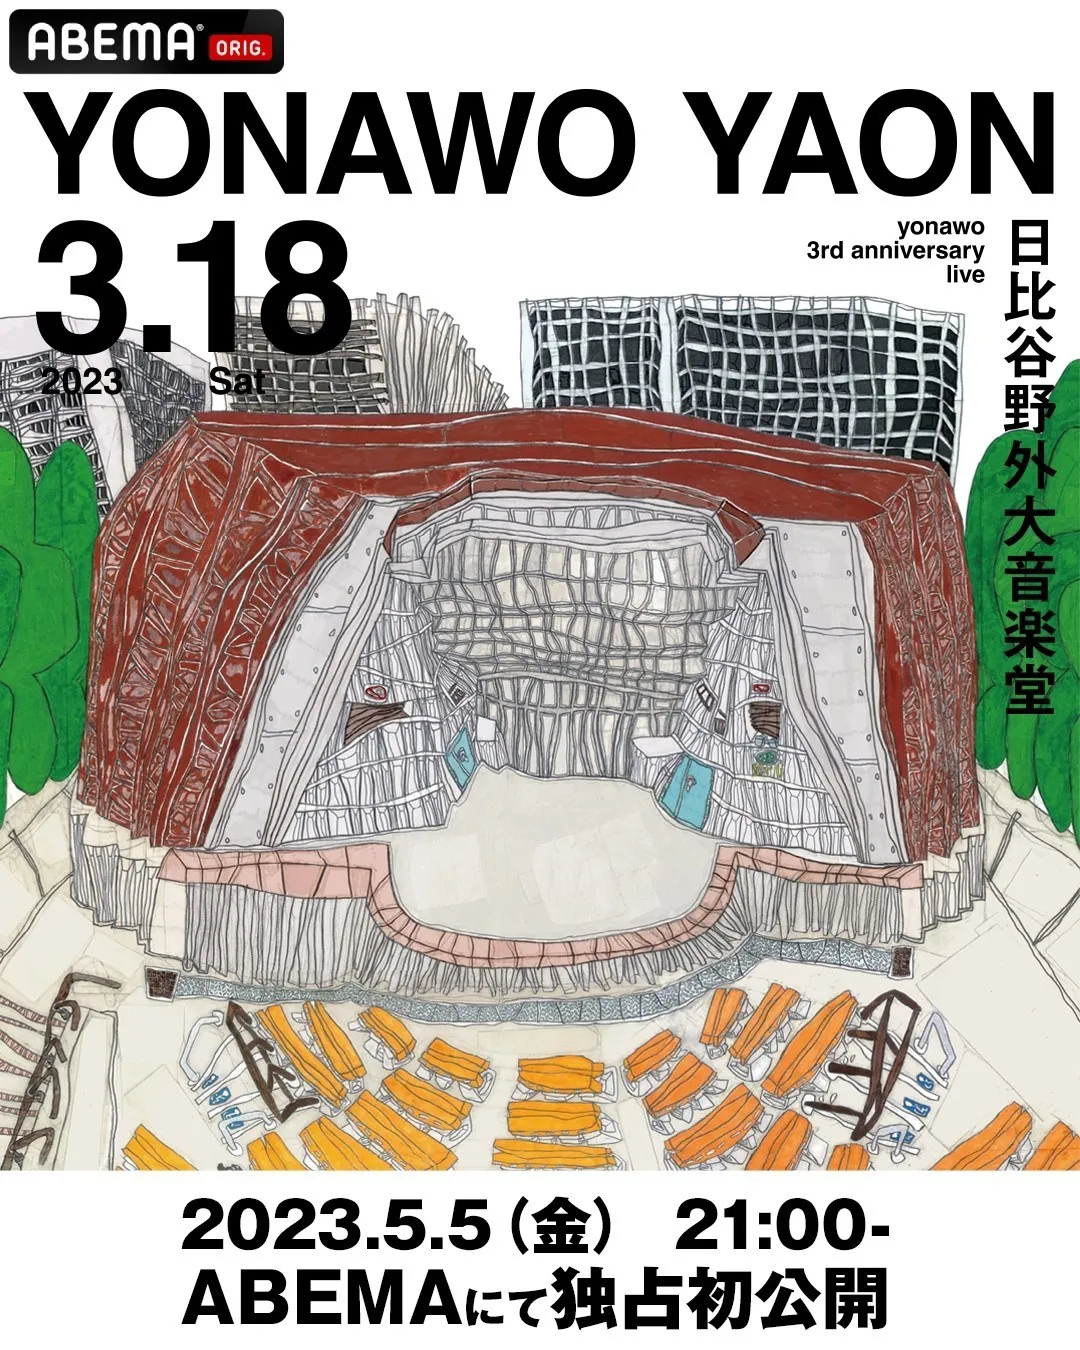 日比谷野外大音楽堂でのワンマンライブ「yonawo 3rd anniversary live“YONAWO YAON”」の無料放送が決定したyonawo